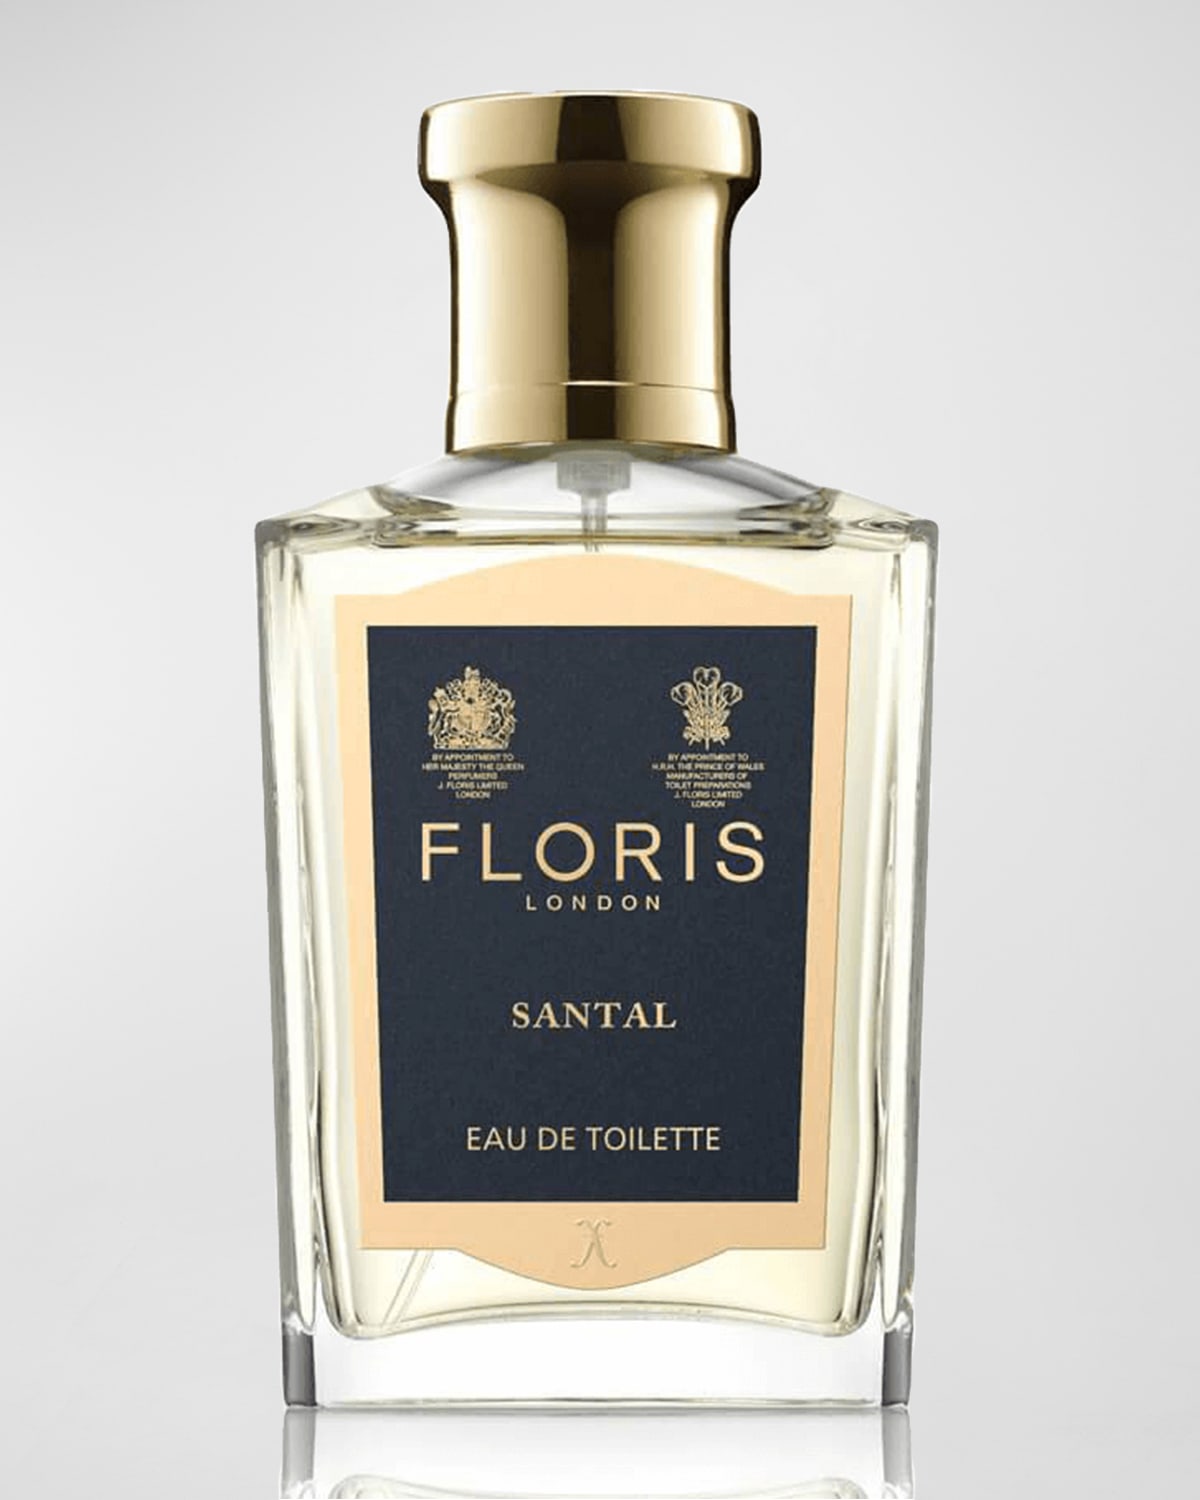 Floris London Santal Eau de Toilette, 1.7 oz.